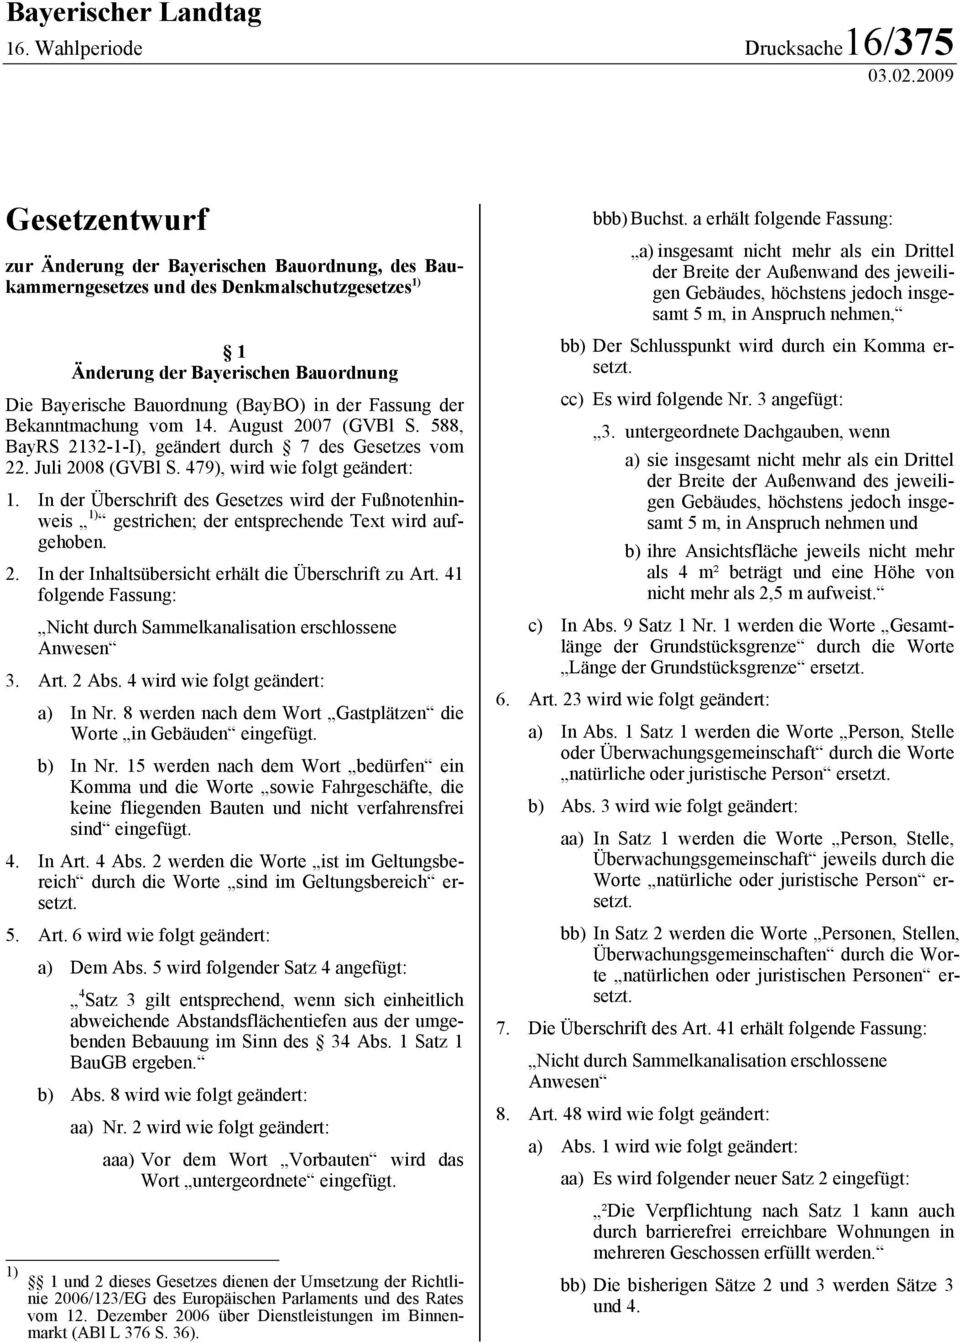 Fassung der Bekanntmachung vom 14. August 2007 (GVBl S. 588, BayRS 2132-1-I), geändert durch 7 des Gesetzes vom 22. Juli 2008 (GVBl S. 479), wird wie folgt geändert: 1.